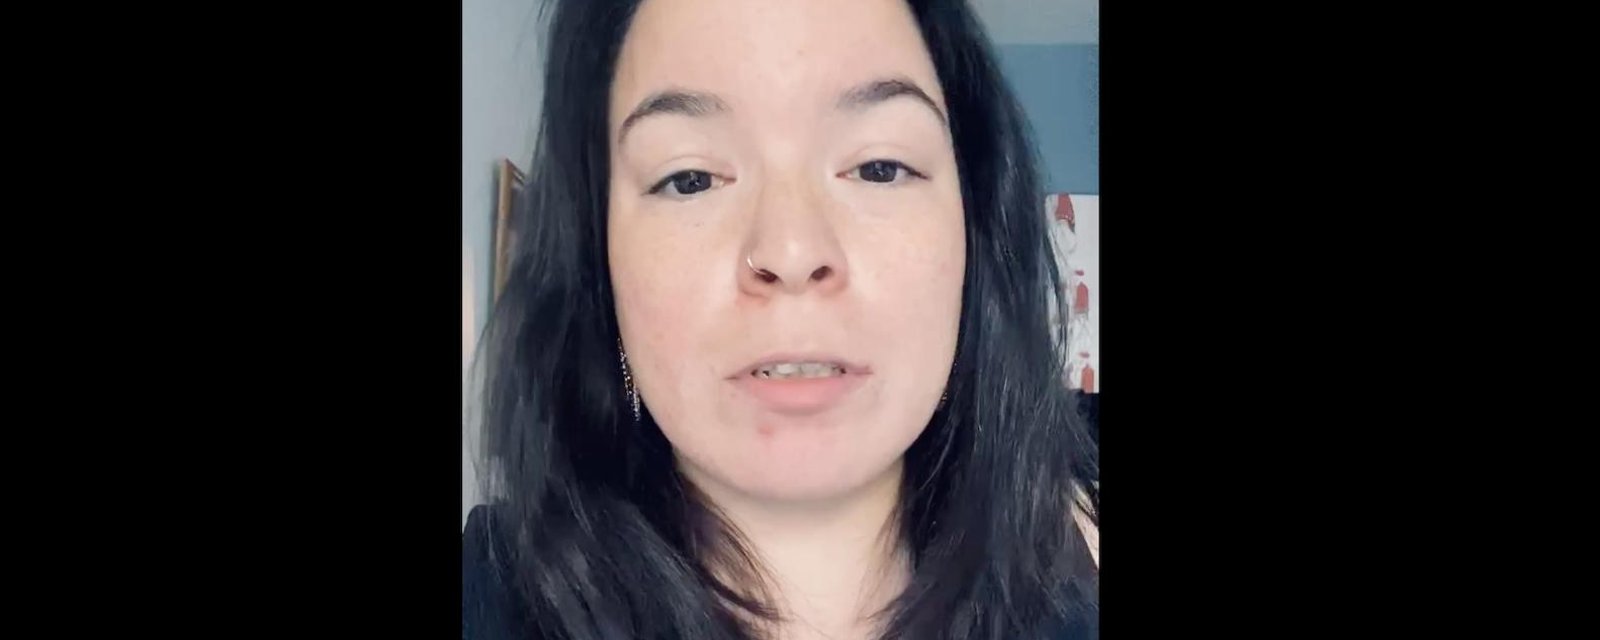 Natasha Kanapé Fontaine publie une vidéo extrêmement émotive suite au décès de Joyce Echaquan